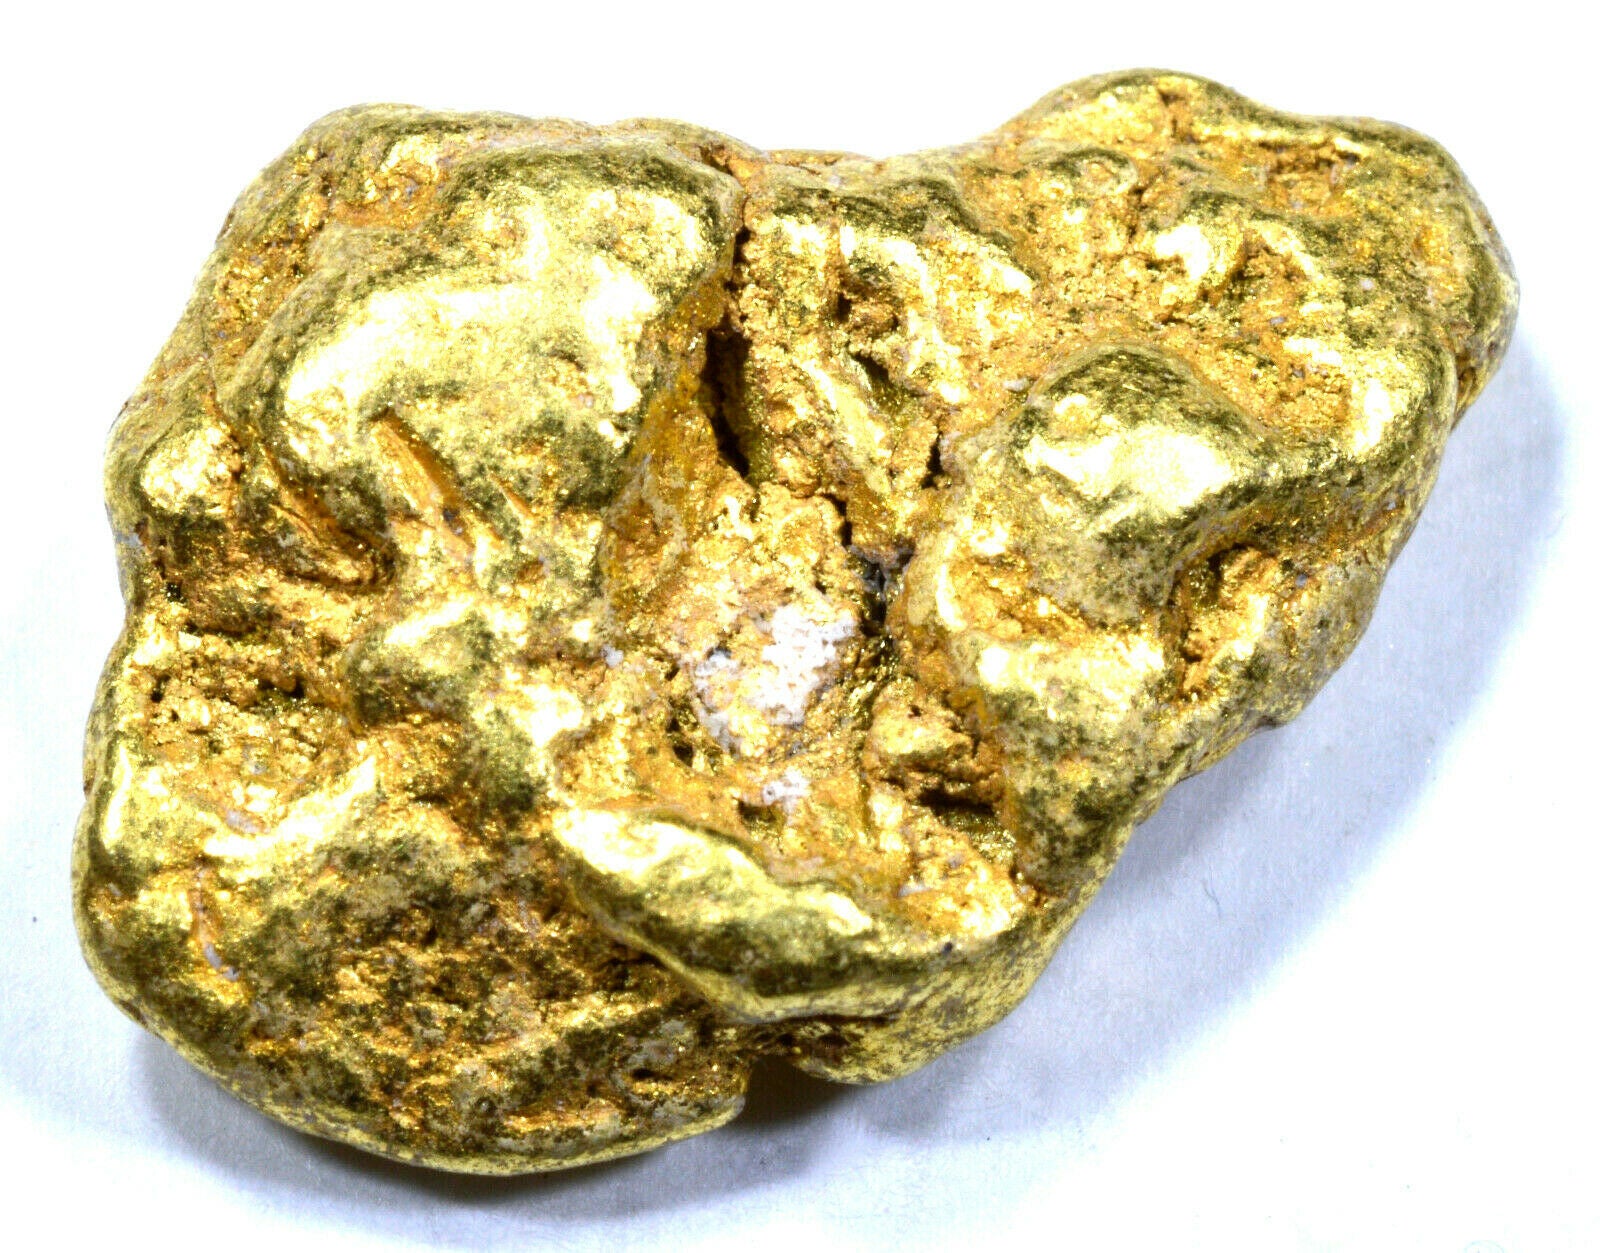 5.253 GRAMS ALASKAN YUKON NATURAL PURE GOLD NUGGET GENUINE (#N412) C GRADE